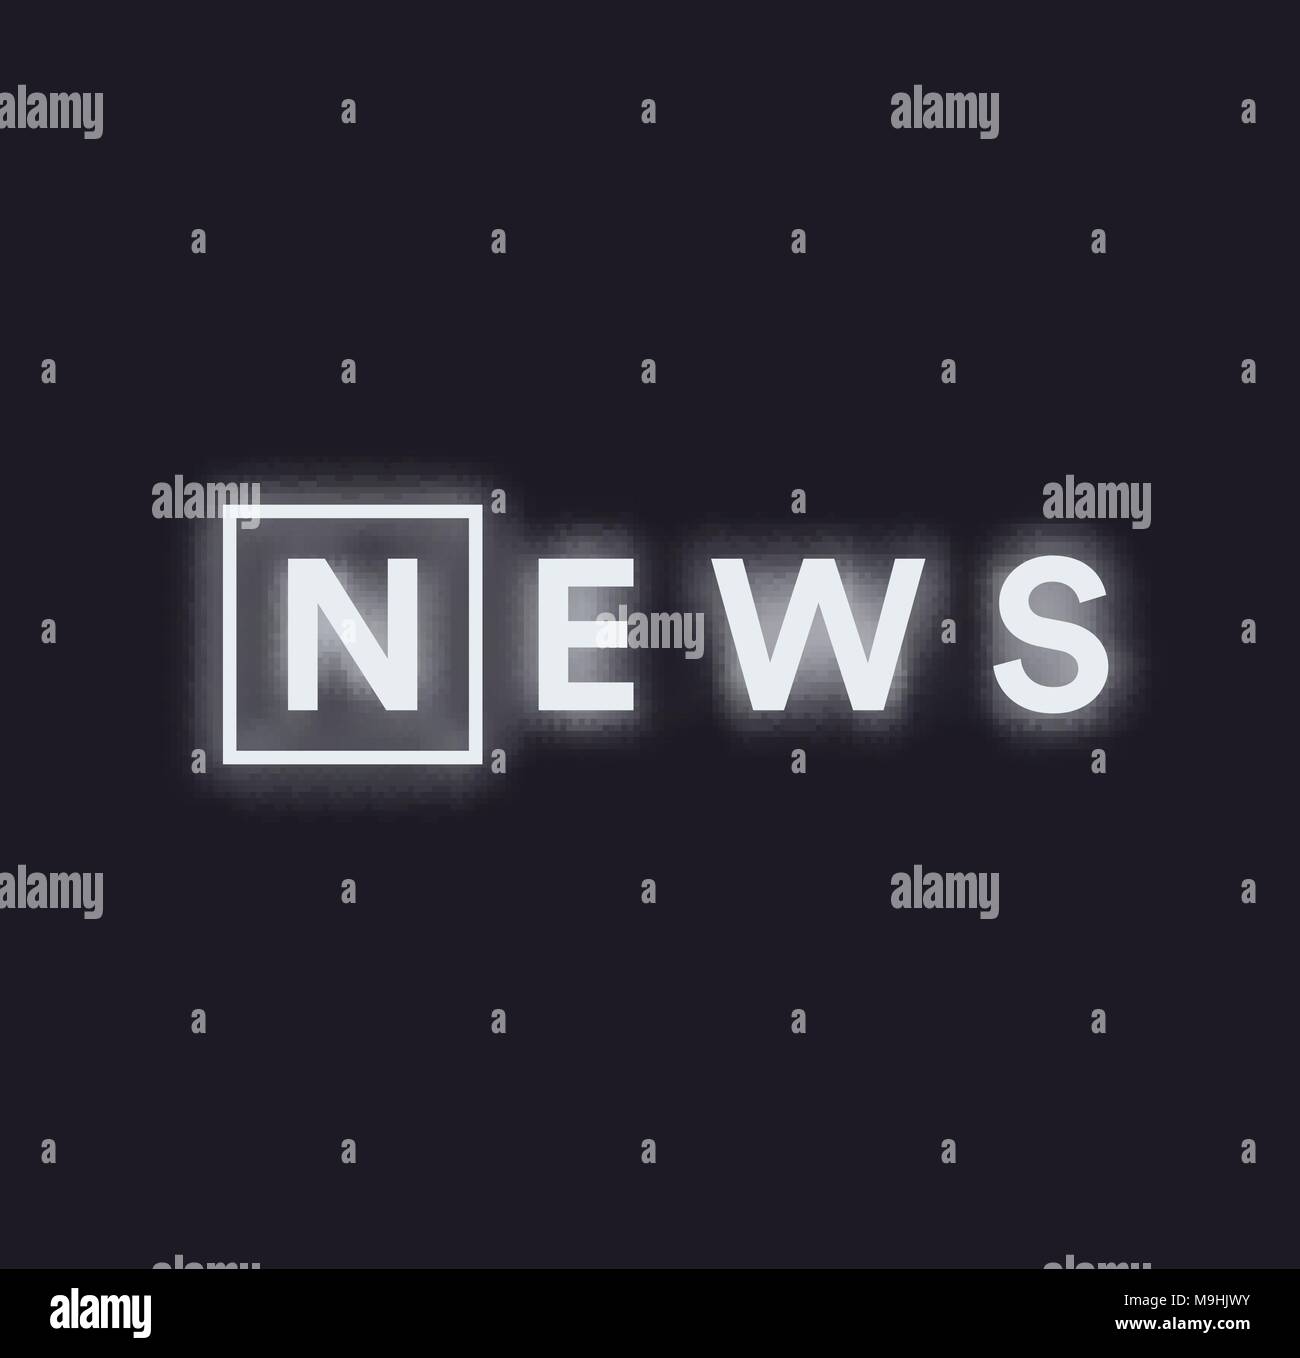 Attività paranormali news logo del messaggio. Monocromatico news feed concetto, bianco illuminato con neon testo su sfondo nero, illustrazione vettoriale. Illustrazione Vettoriale